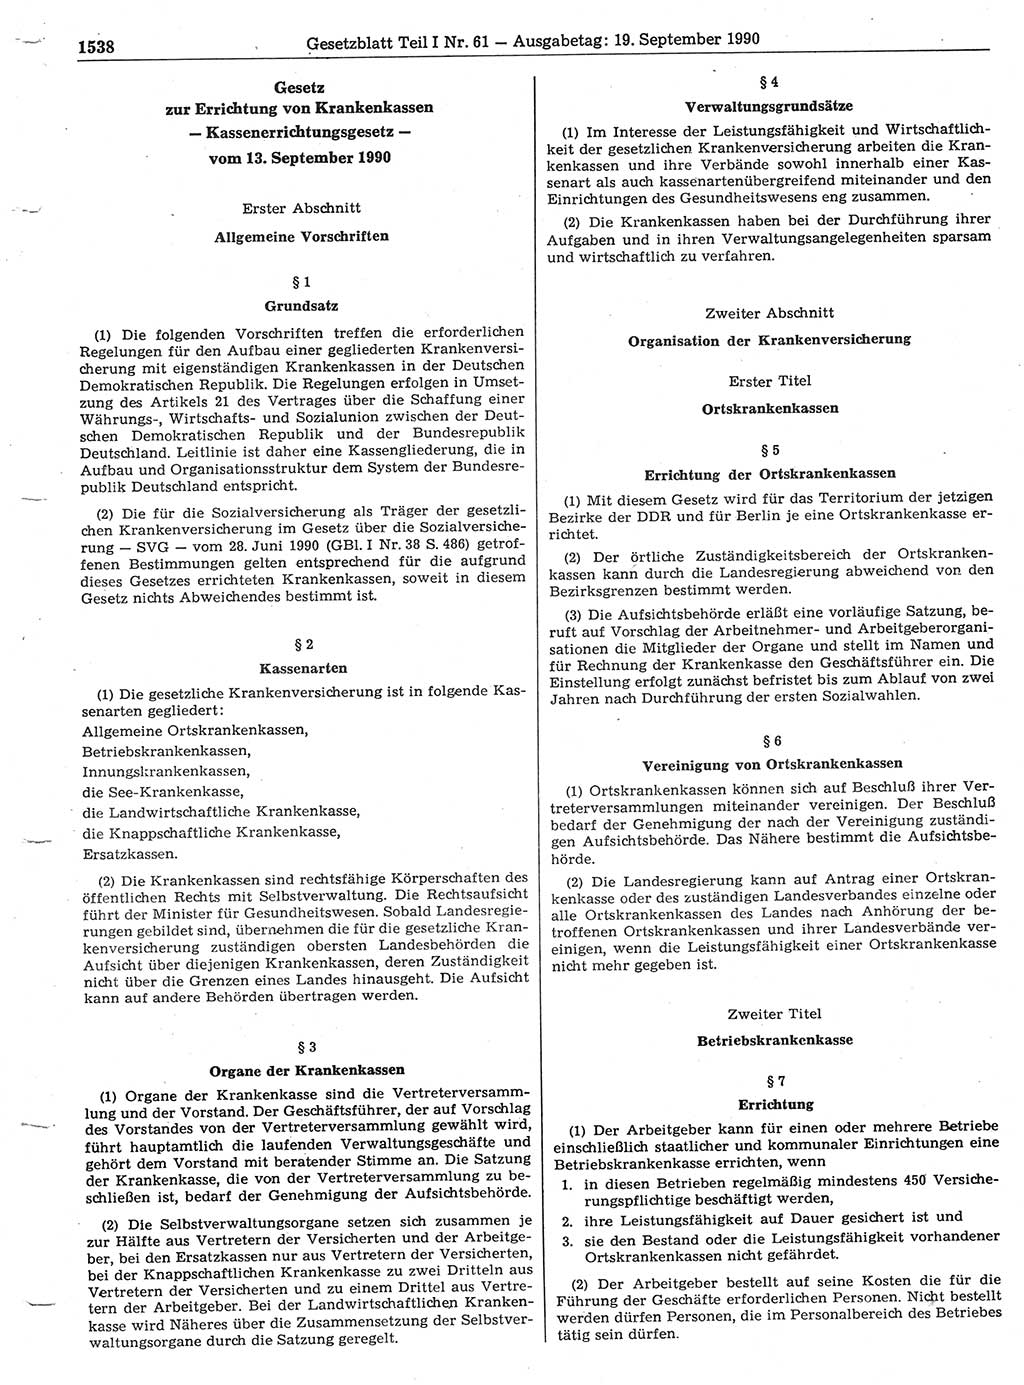 Gesetzblatt (GBl.) der Deutschen Demokratischen Republik (DDR) Teil Ⅰ 1990, Seite 1538 (GBl. DDR Ⅰ 1990, S. 1538)